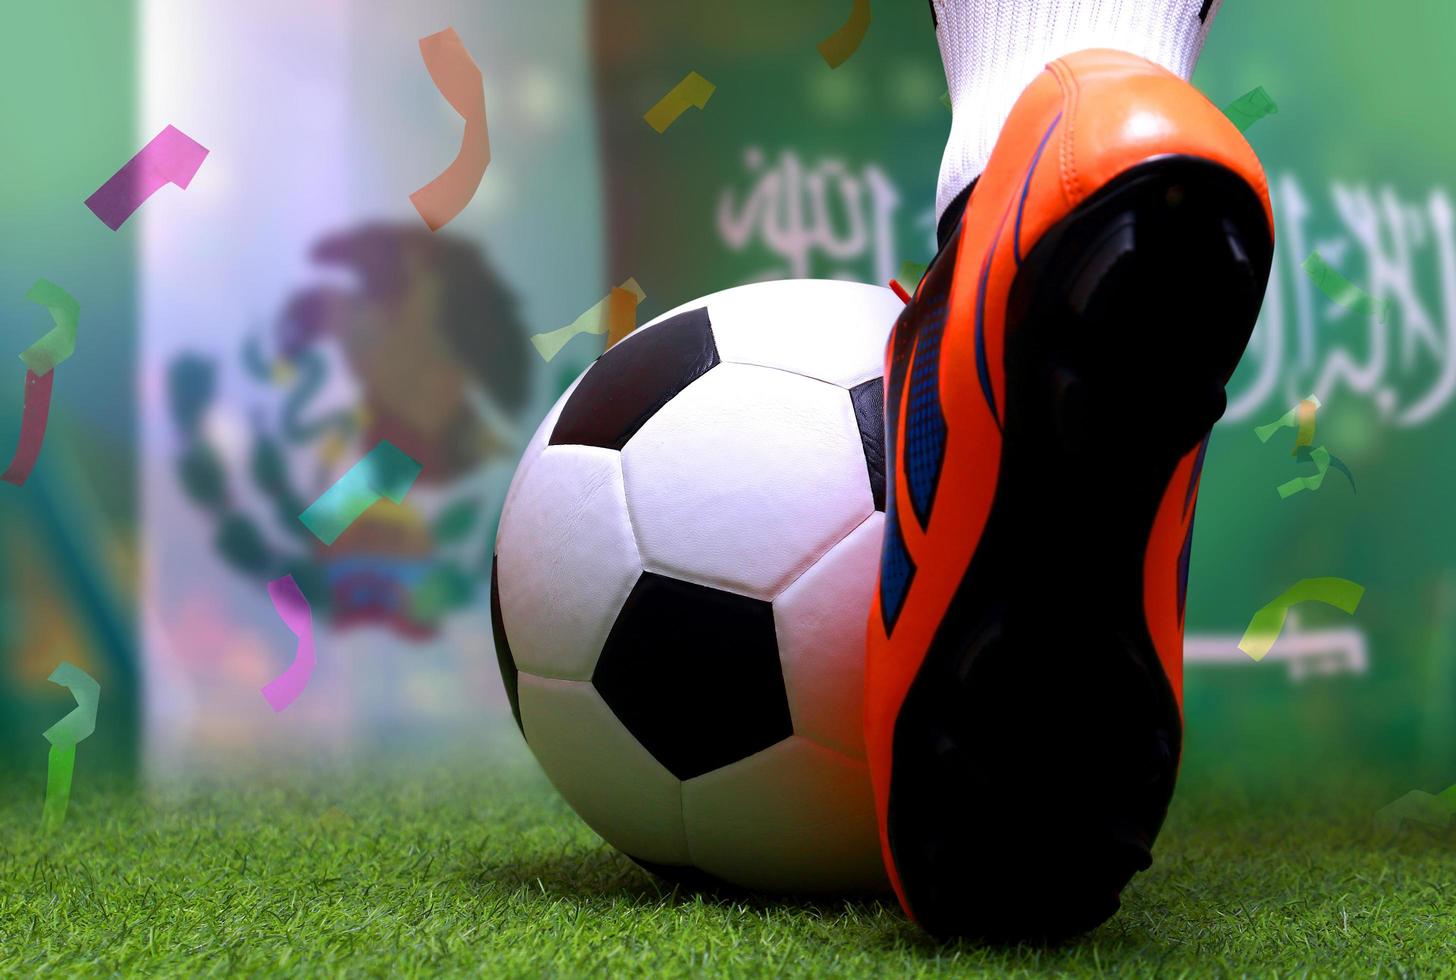 competição da copa de futebol entre o méxico nacional e a arábia saudita nacional. foto